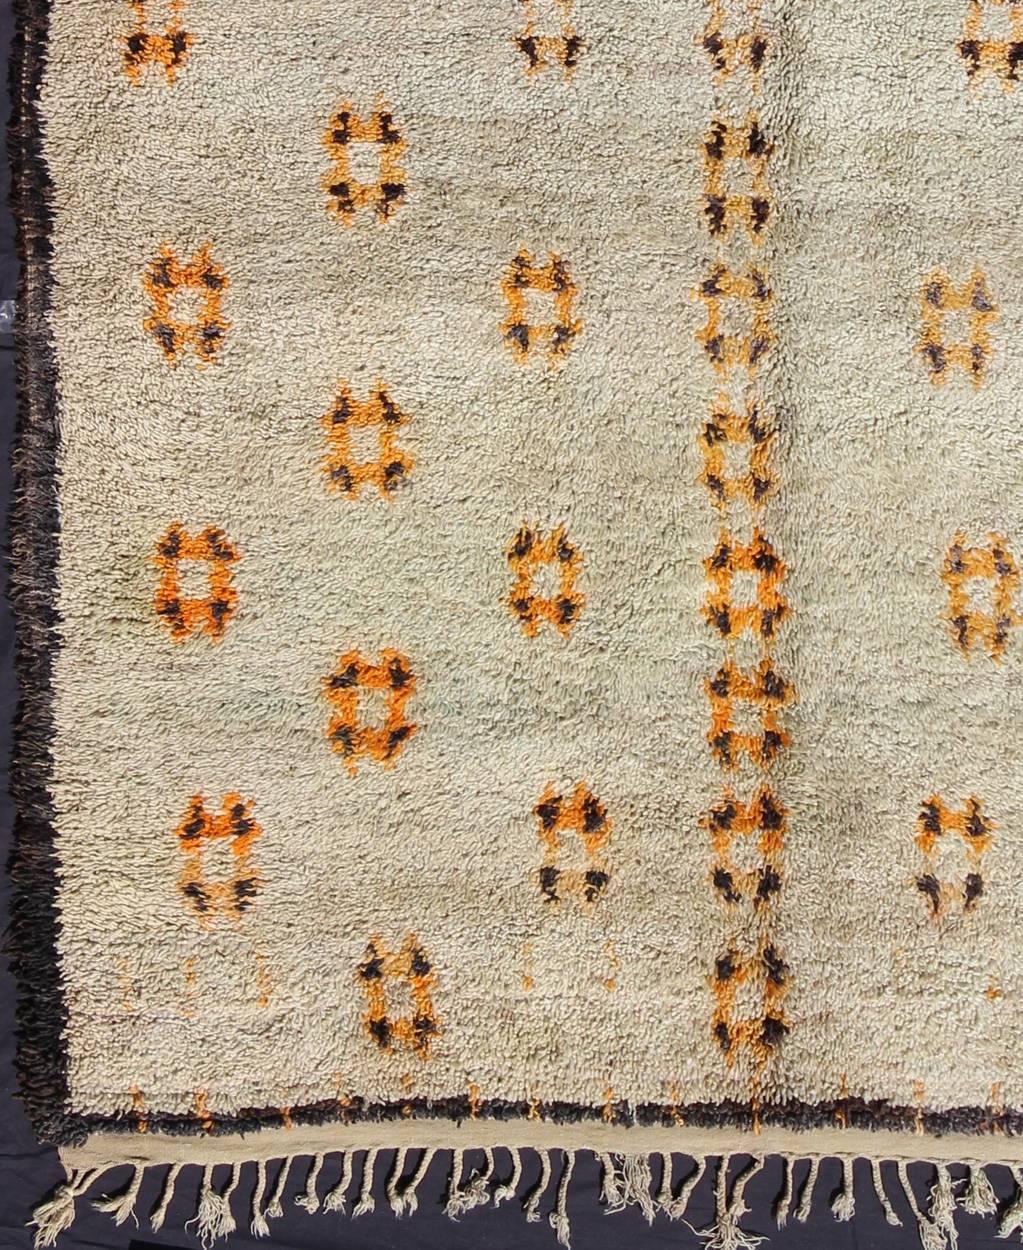 Maße: 7'4'' x 11'4''.
Dieser Teppich zeichnet sich durch organische und wunderbar kreative Musterkompositionen aus, die in der Vergangenheit oft auf obskuren Stammestraditionen und Glaubensvorstellungen beruhten. Dieser wunderschöne und zarte